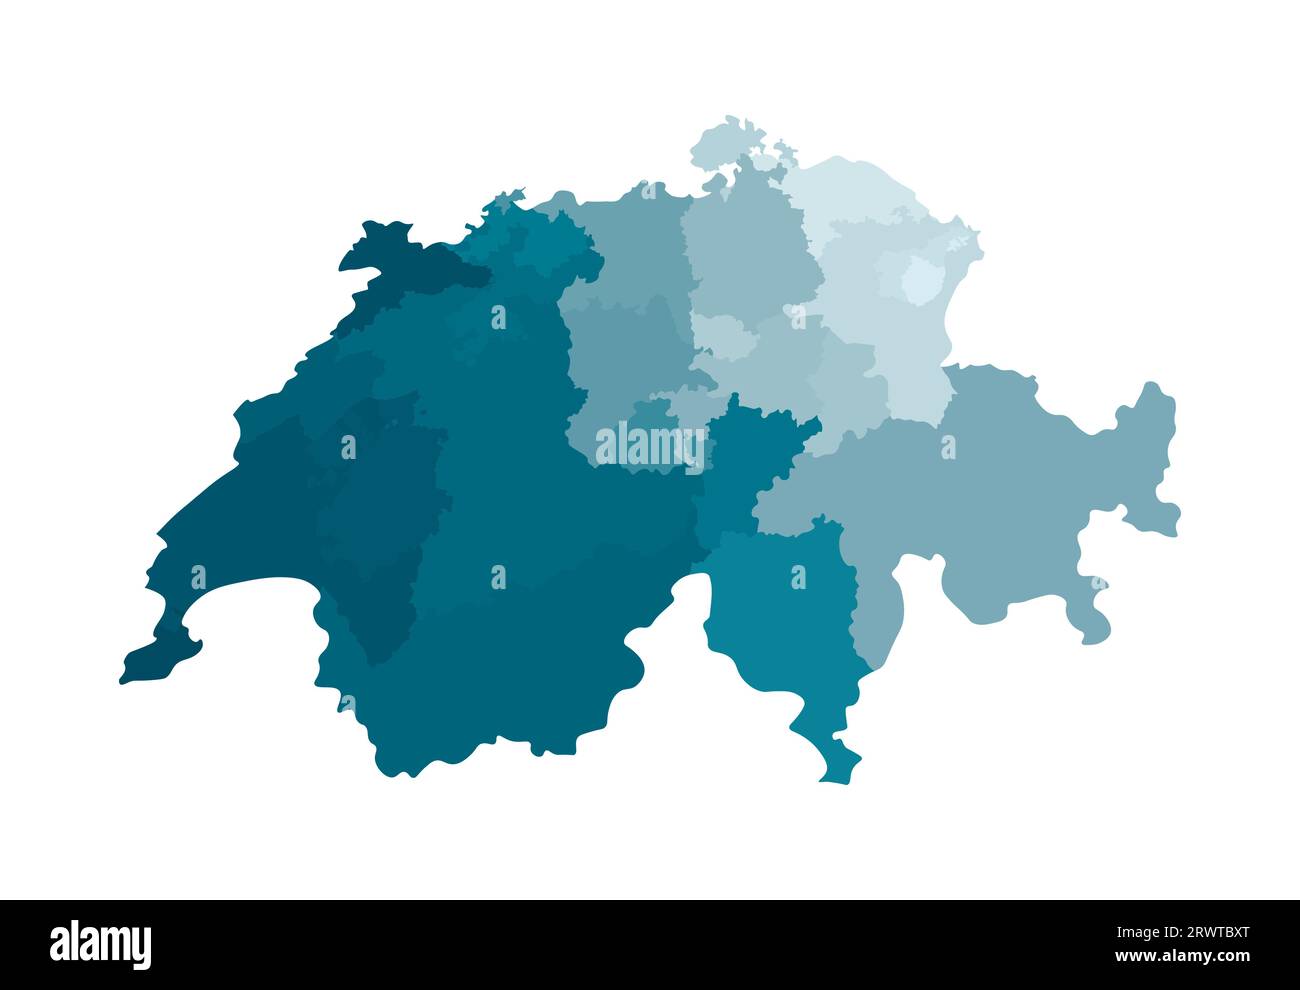 Vektorisolierte Darstellung einer vereinfachten Verwaltungskarte der Schweiz. Grenzen der Regionen. Farbenfrohe, khakifarbene Silhouetten. Stock Vektor